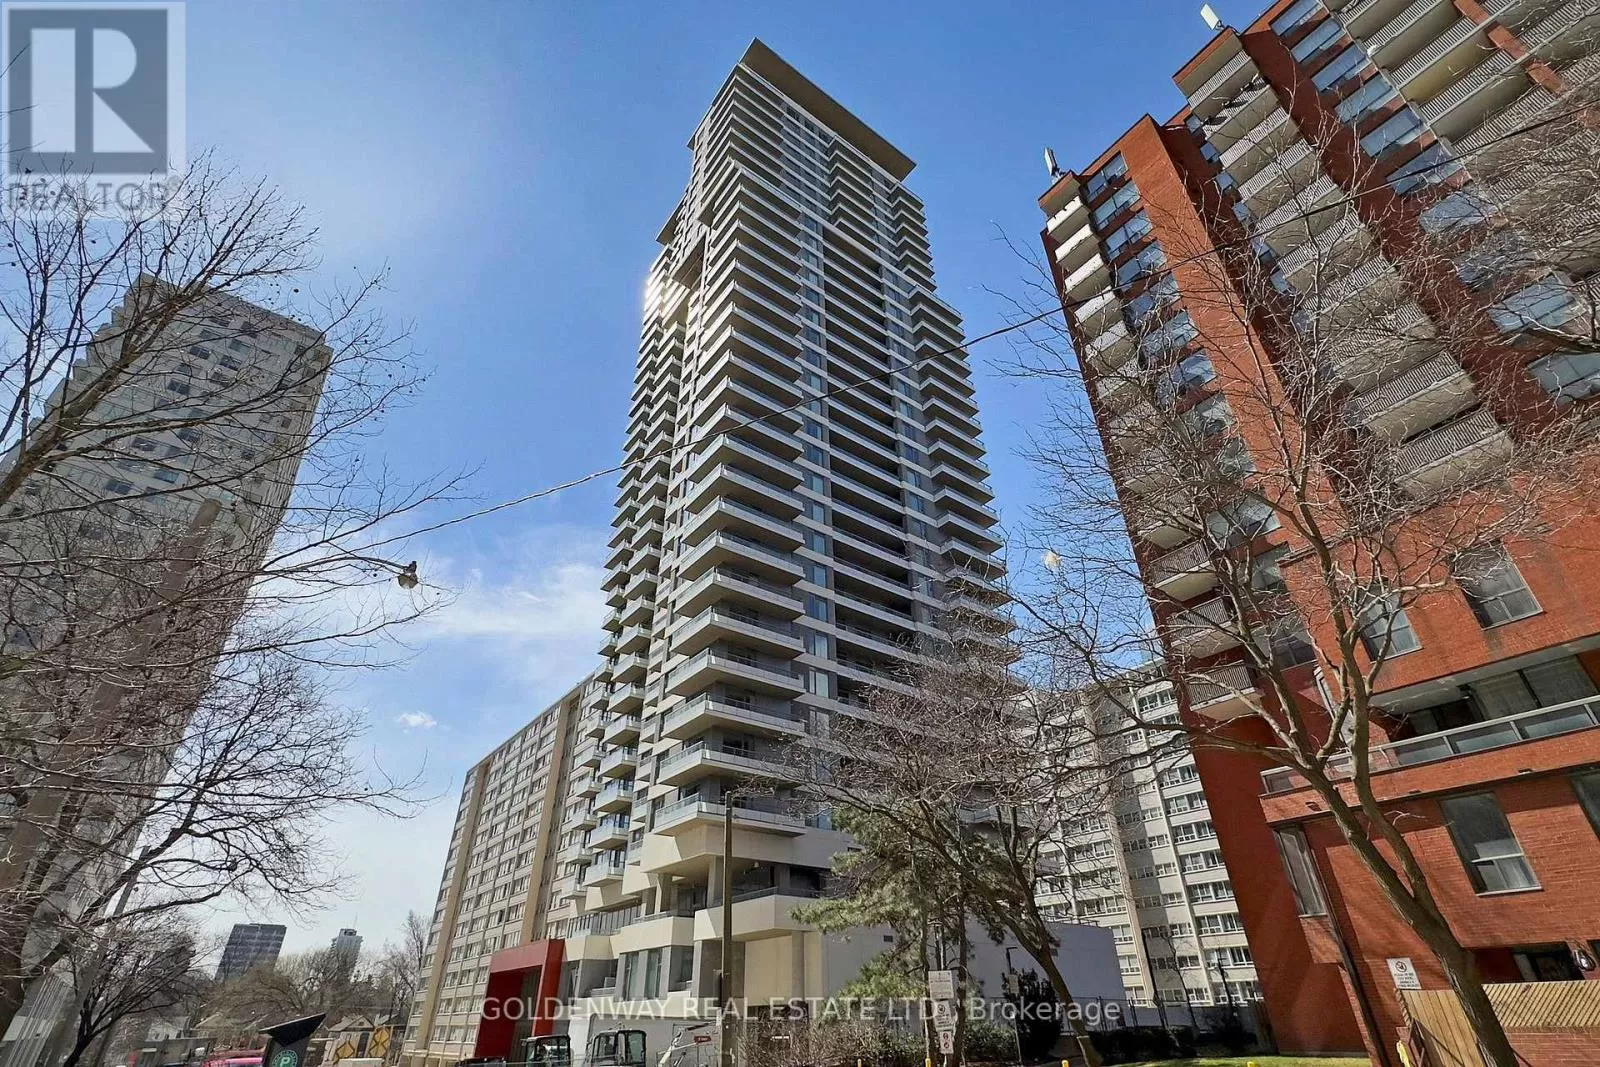 Apartment for rent: 616 - 50 Dunfield Avenue, Toronto, Ontario M4S 0E4